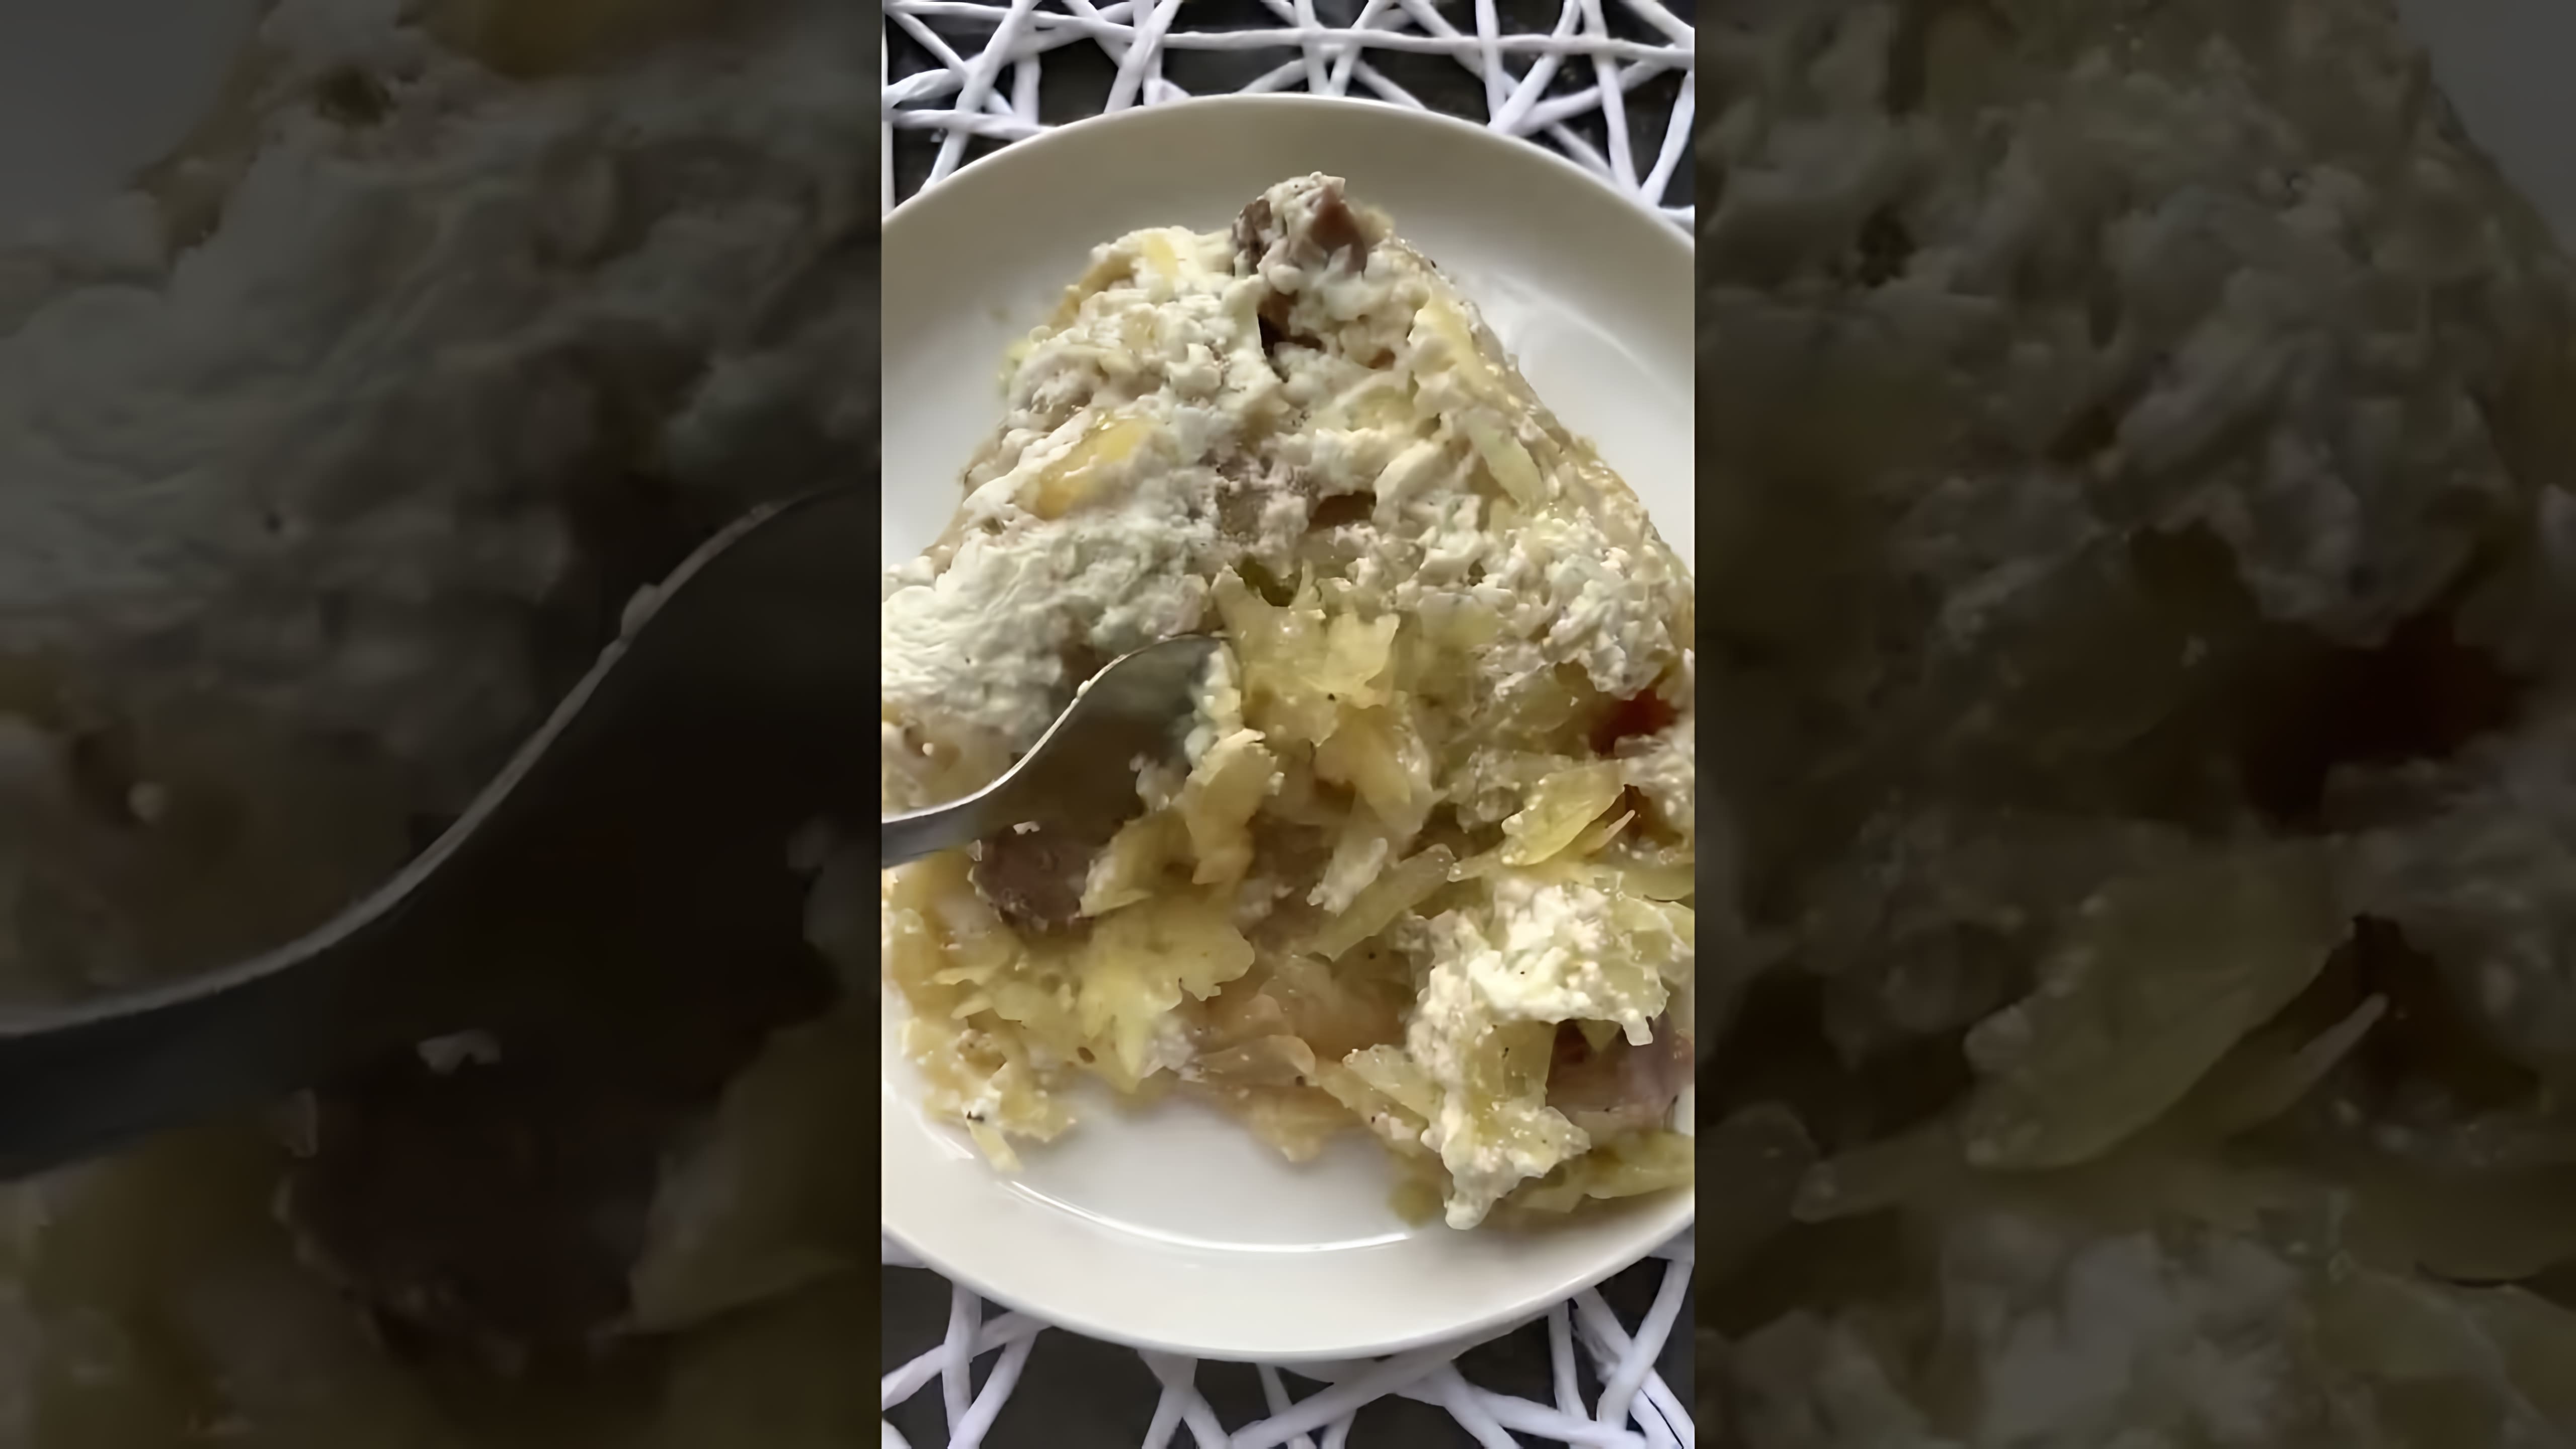 Очень вкусная картофельная бабка - это видео-ролик, который демонстрирует процесс приготовления вкусного и сытного блюда из картофеля